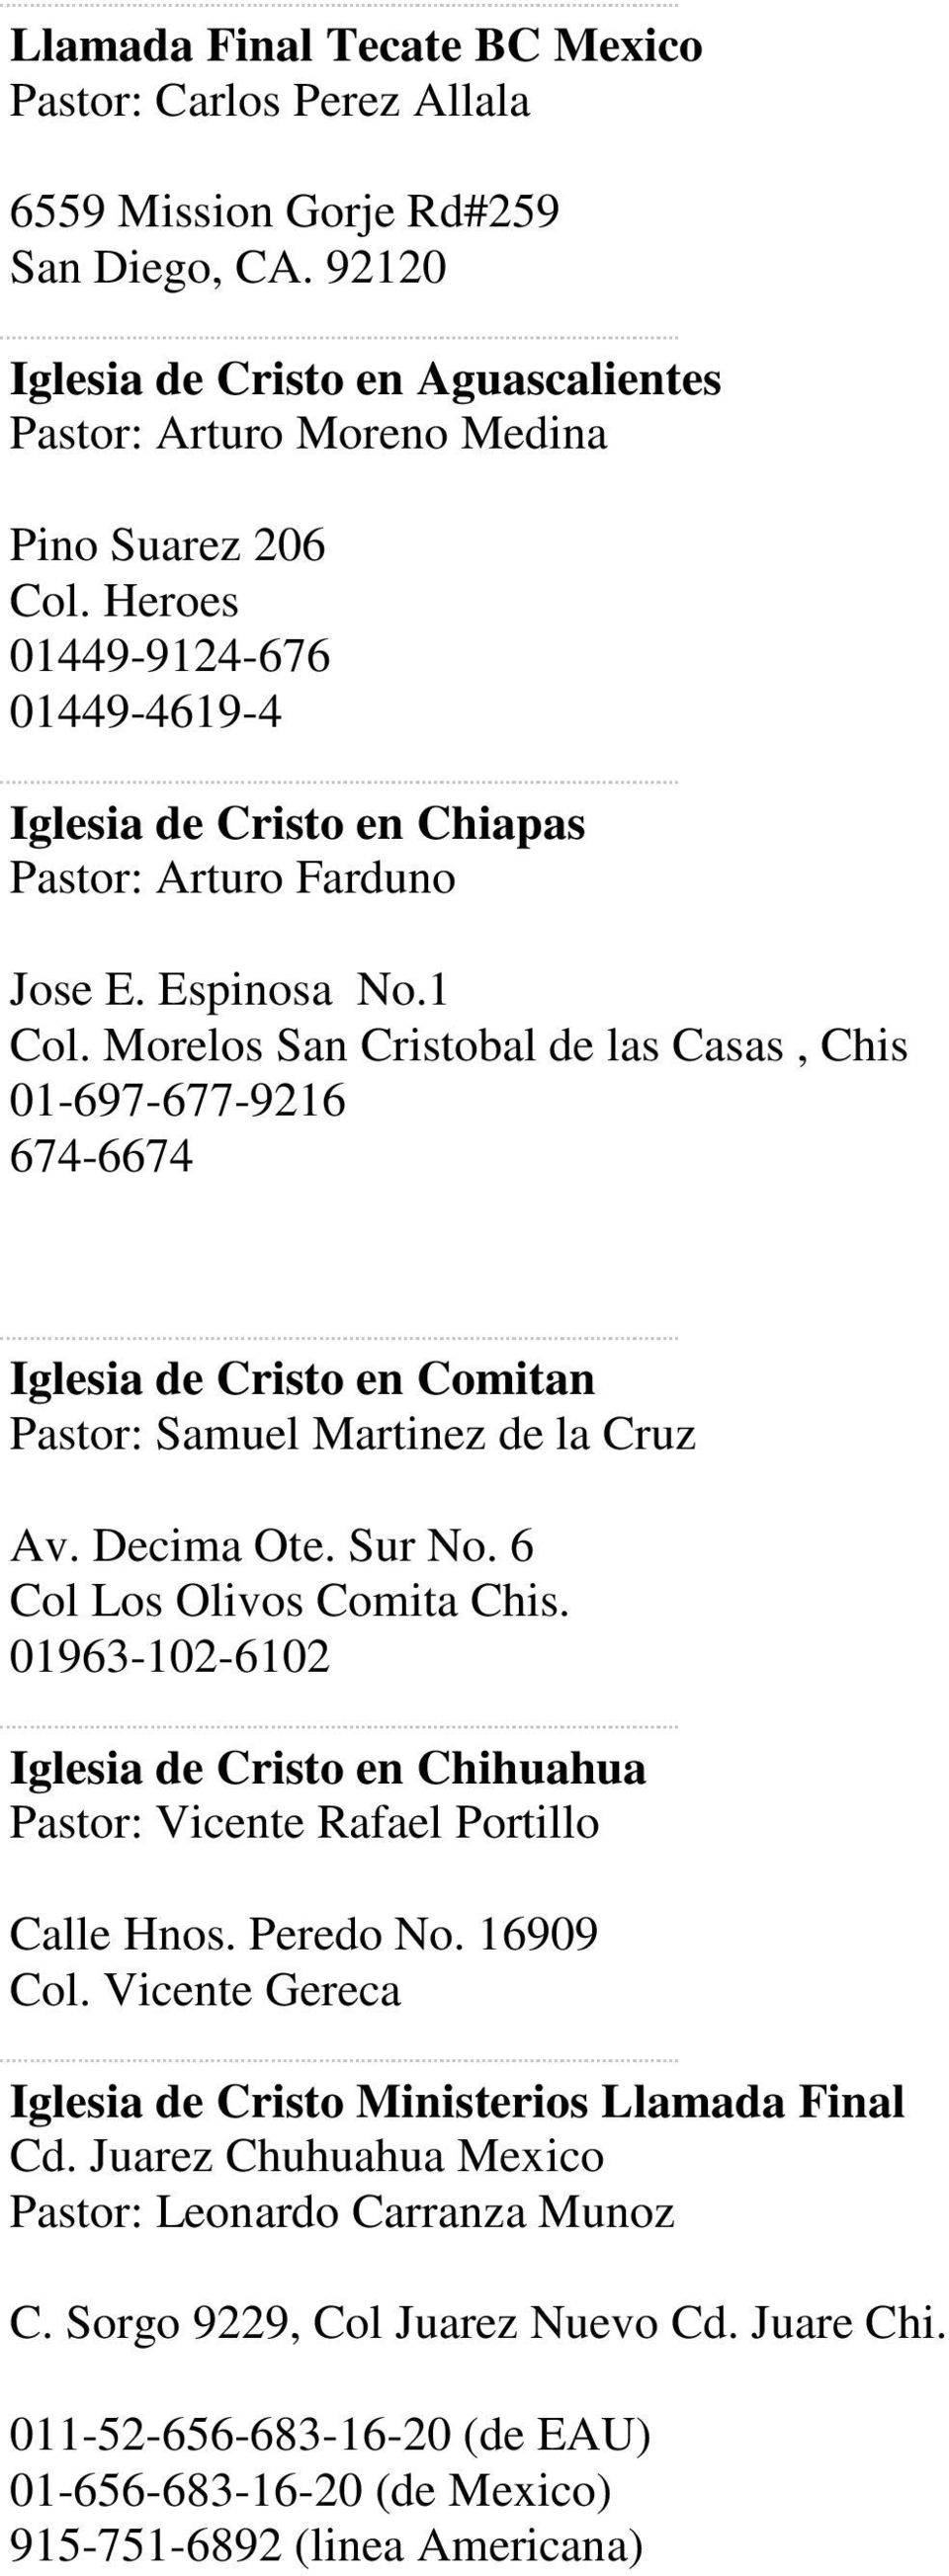 FINAL CALL MINISTRIES IGLESIA DE CRISO MINISTERIOS LLAMADA FINAL - PDF  Descargar libre